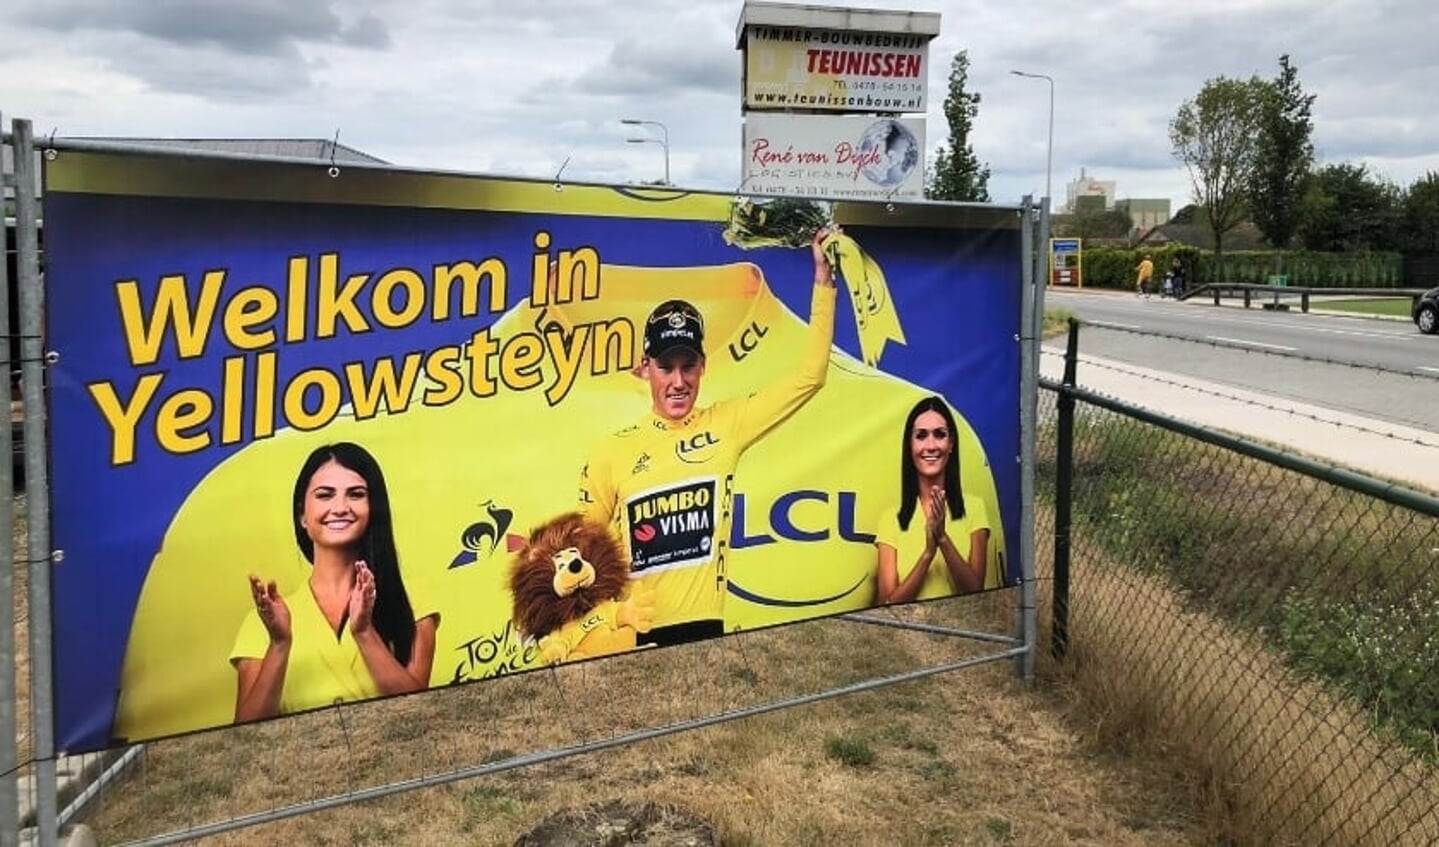 Mike Teunissen droeg in 2019 twee dagen de gele trui, wat natuurlijk ook tot een geletruigekte leidde in het tijdens die dagen tot Yellowstone omgedoopte Ysselsteyn.